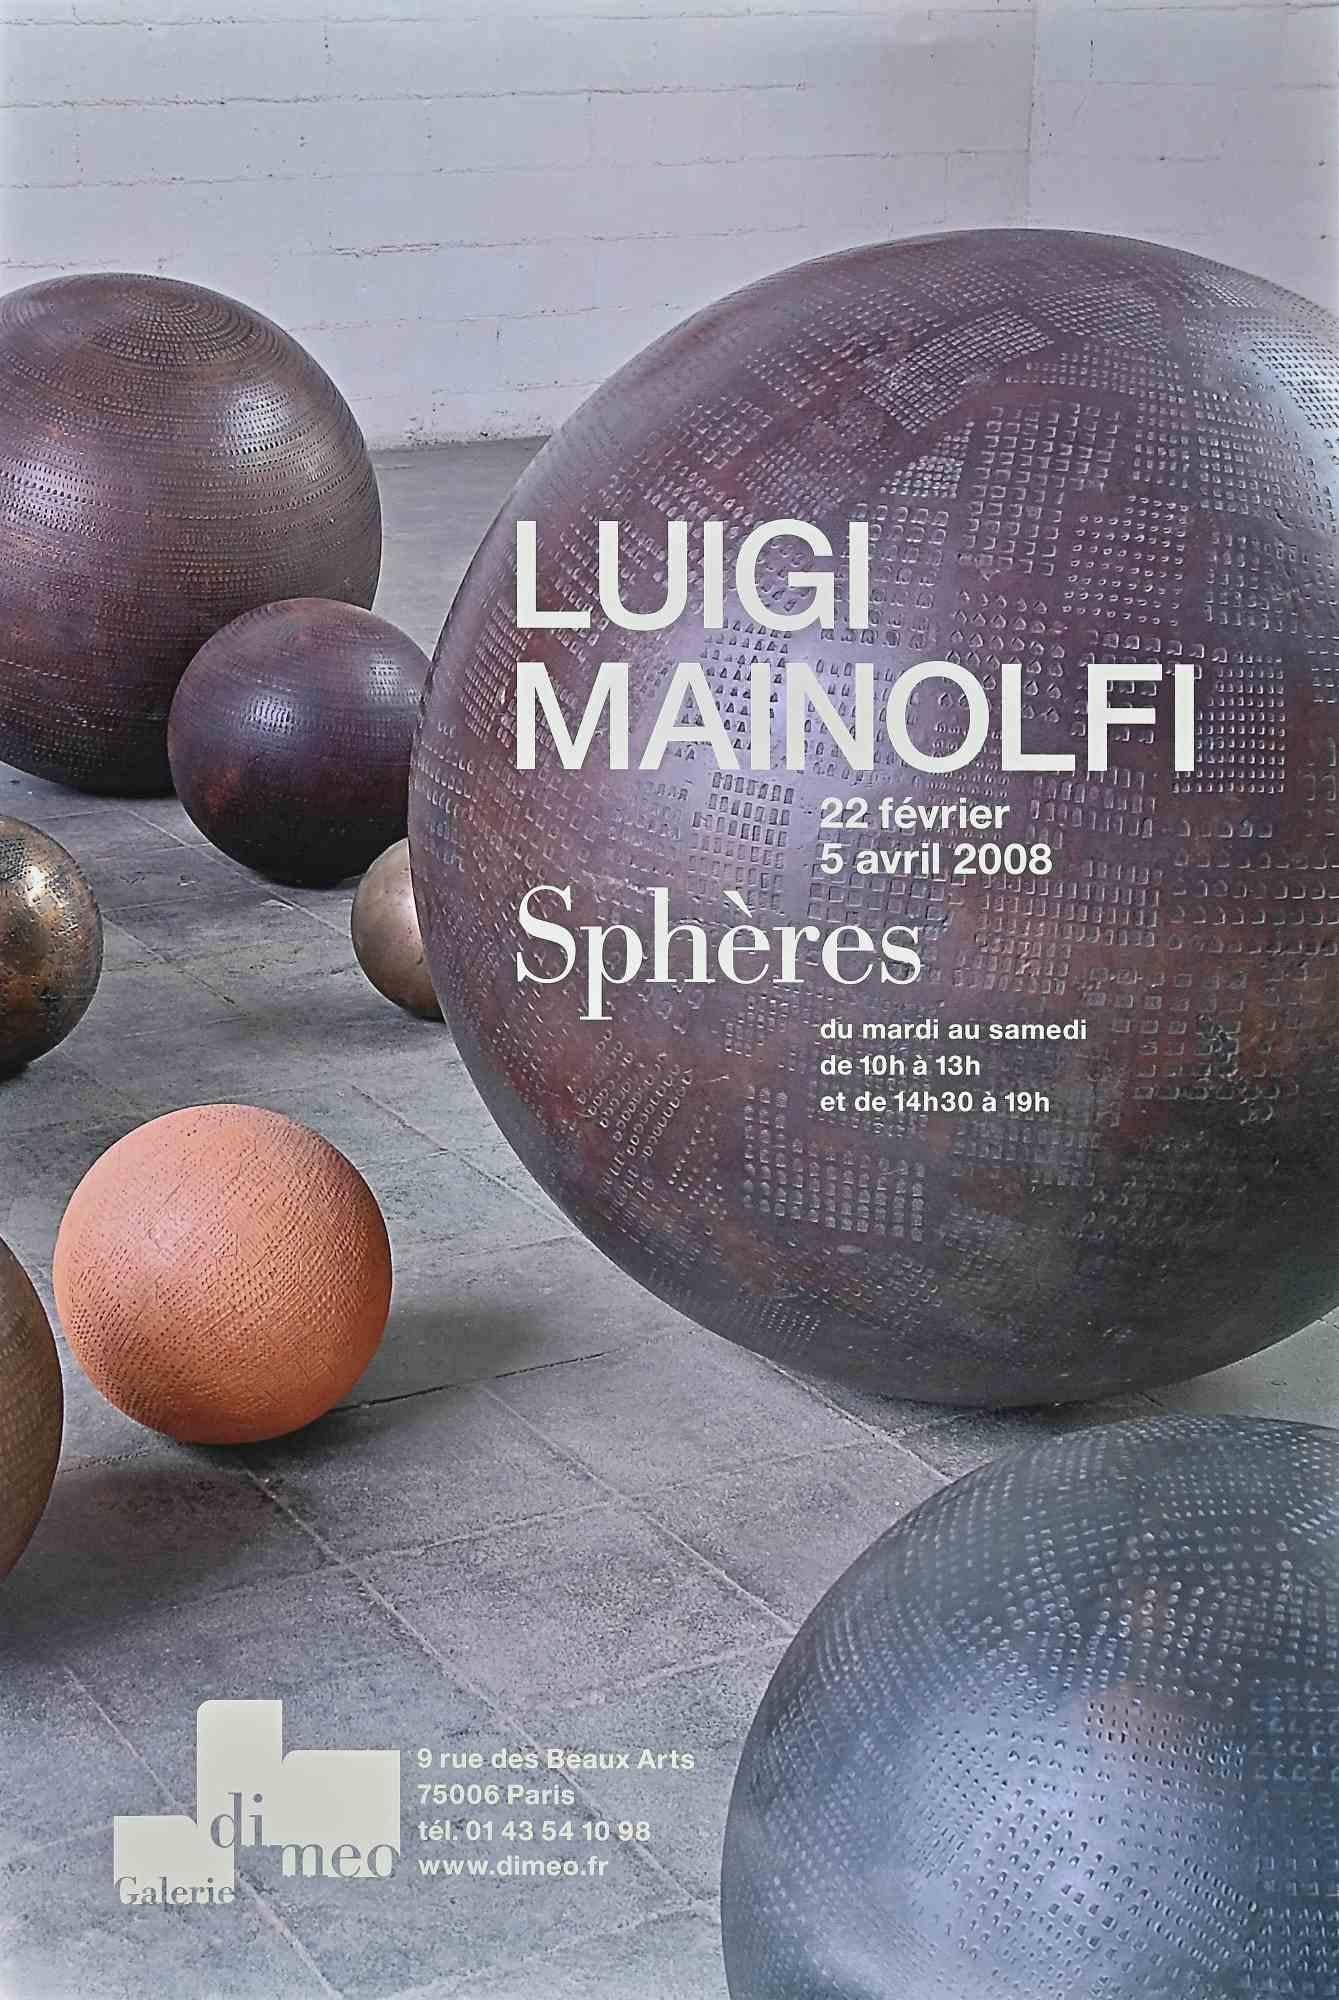 Vintage Poster ist ein Offsetdruck, der für die Ausstellung von Luigi Mainolfi im Jahr 2008 realisiert wurde.

Guter Zustand, keine Signatur.

Die Ausstellung ist von Februar bis April 2008 in der Galerie Di Meo in Paris zu sehen.

Luigi Mainolfi